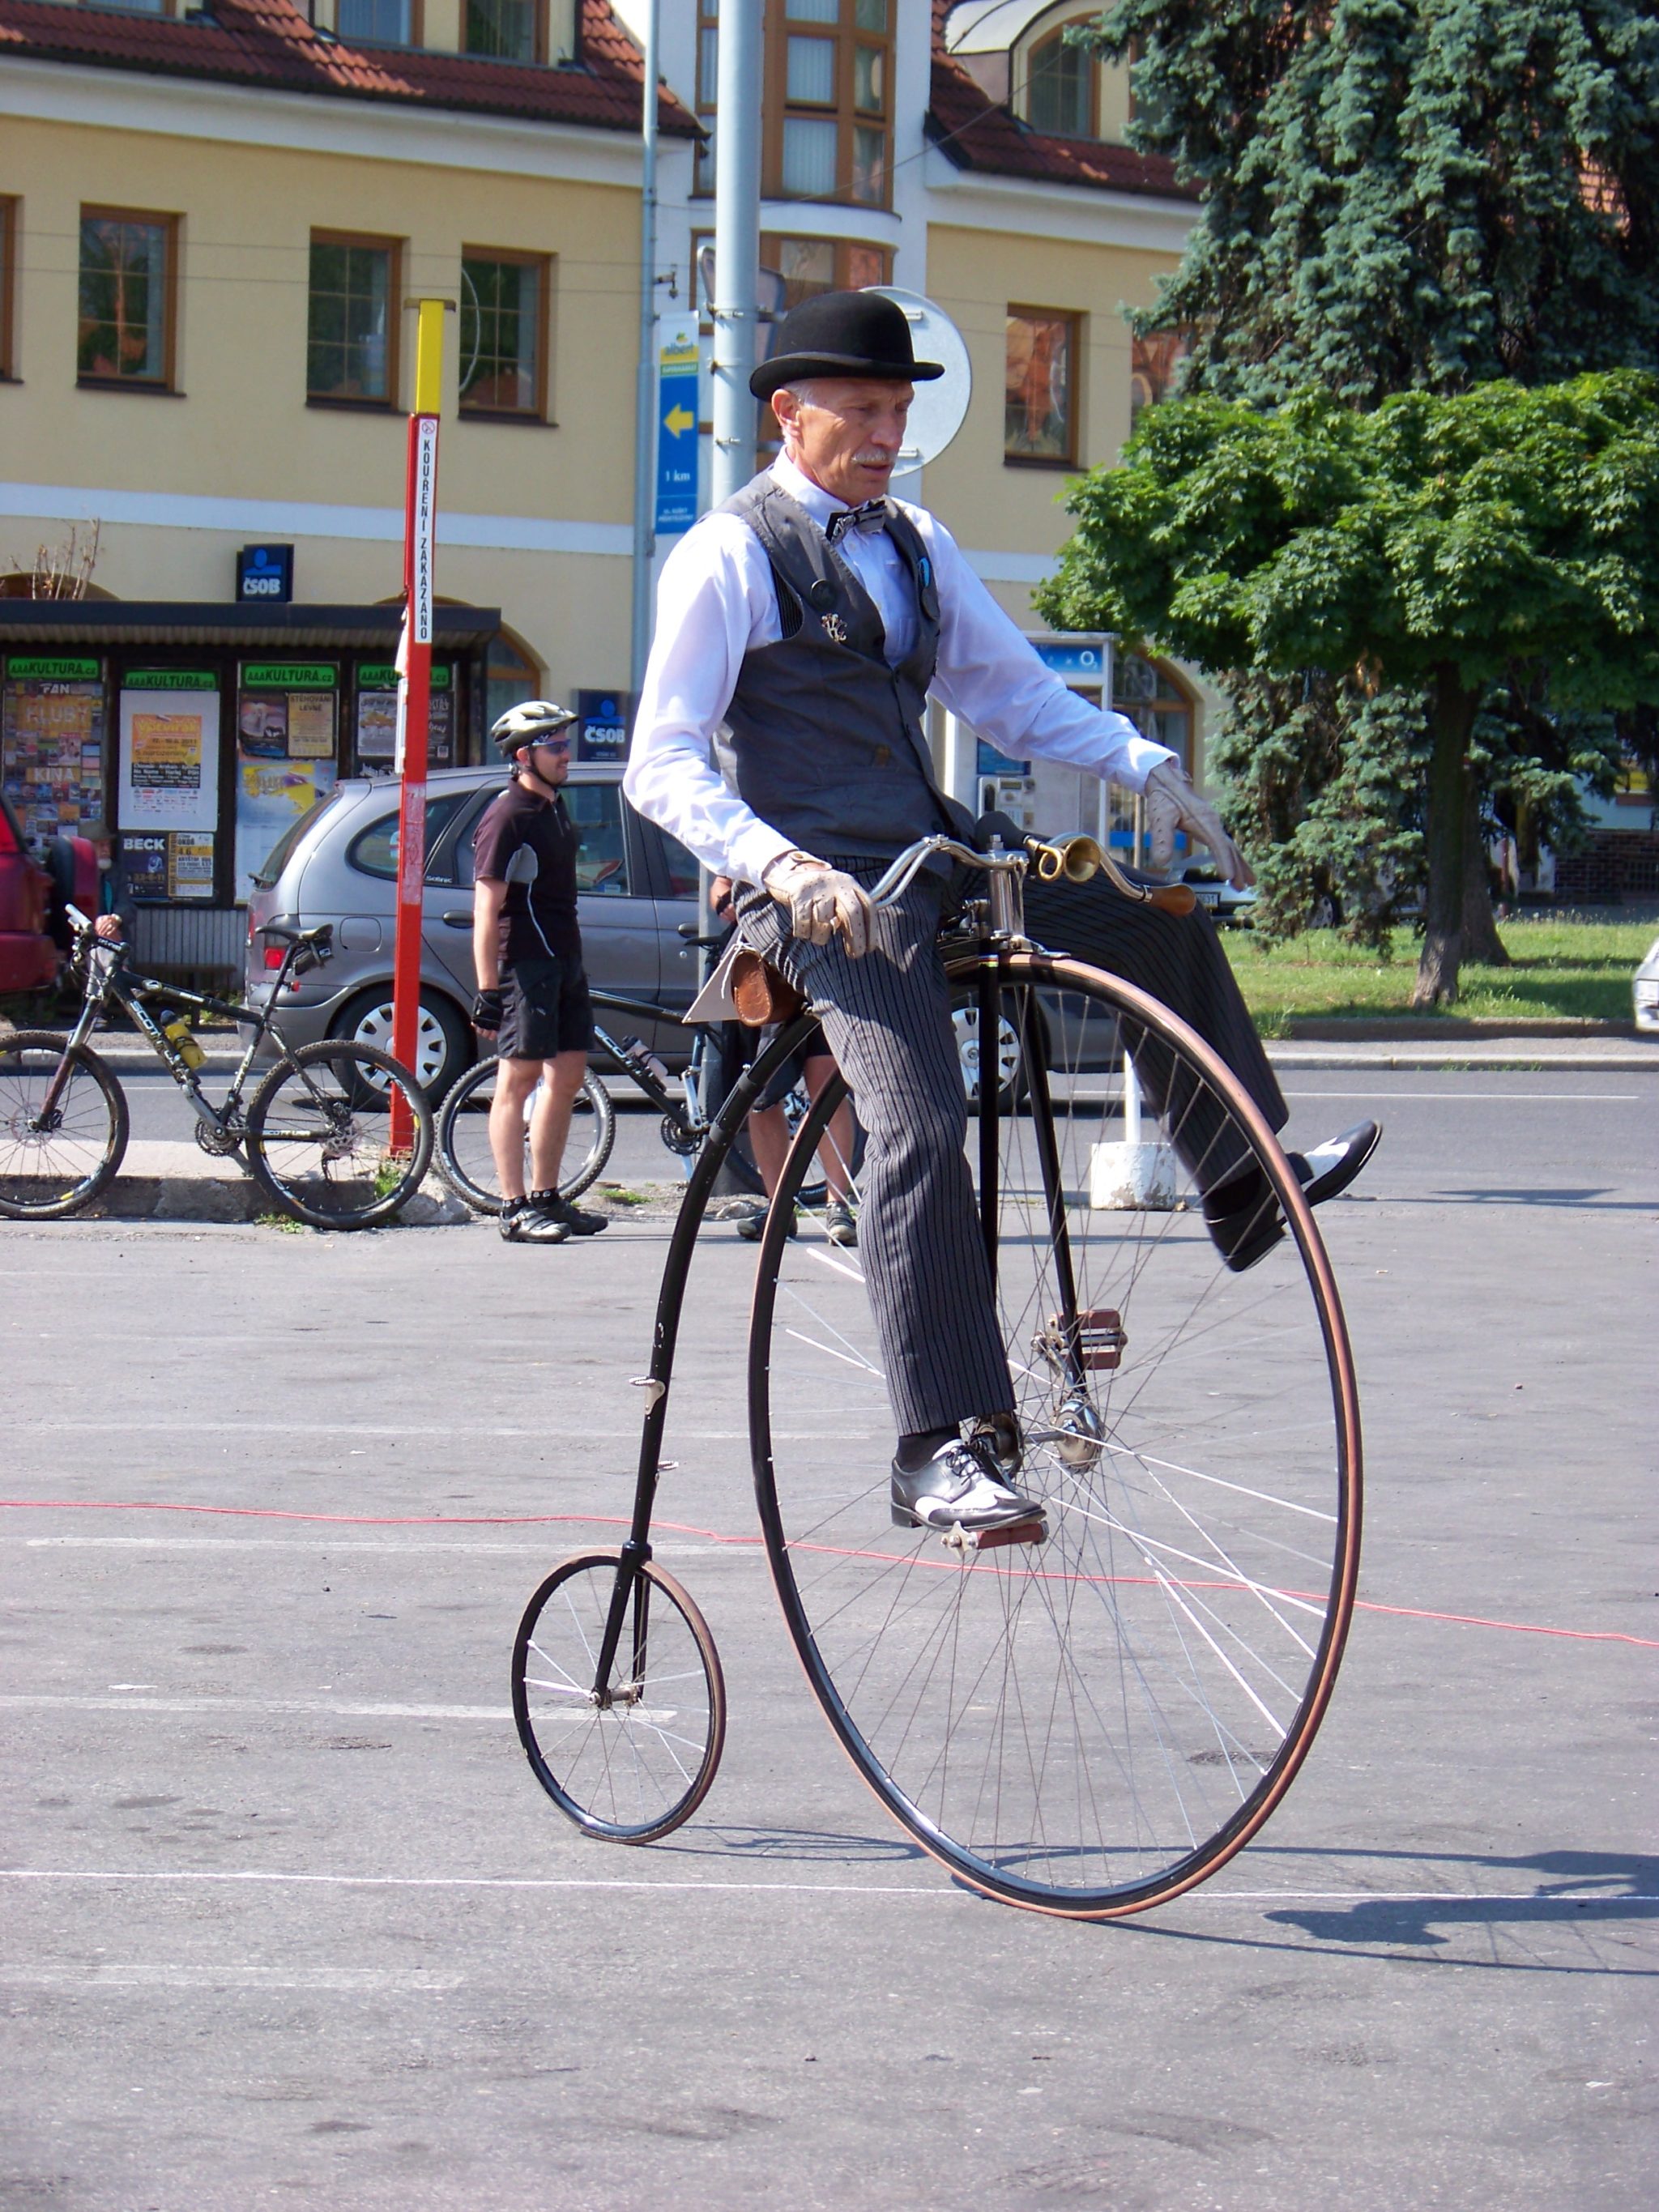 Wacklige Angelegenheit: Vom Hochrad fällt man weit hinunter. Etwa 200'000 solche Zweiräder wurden zwischen 1870 bis 1892 hergestellt.